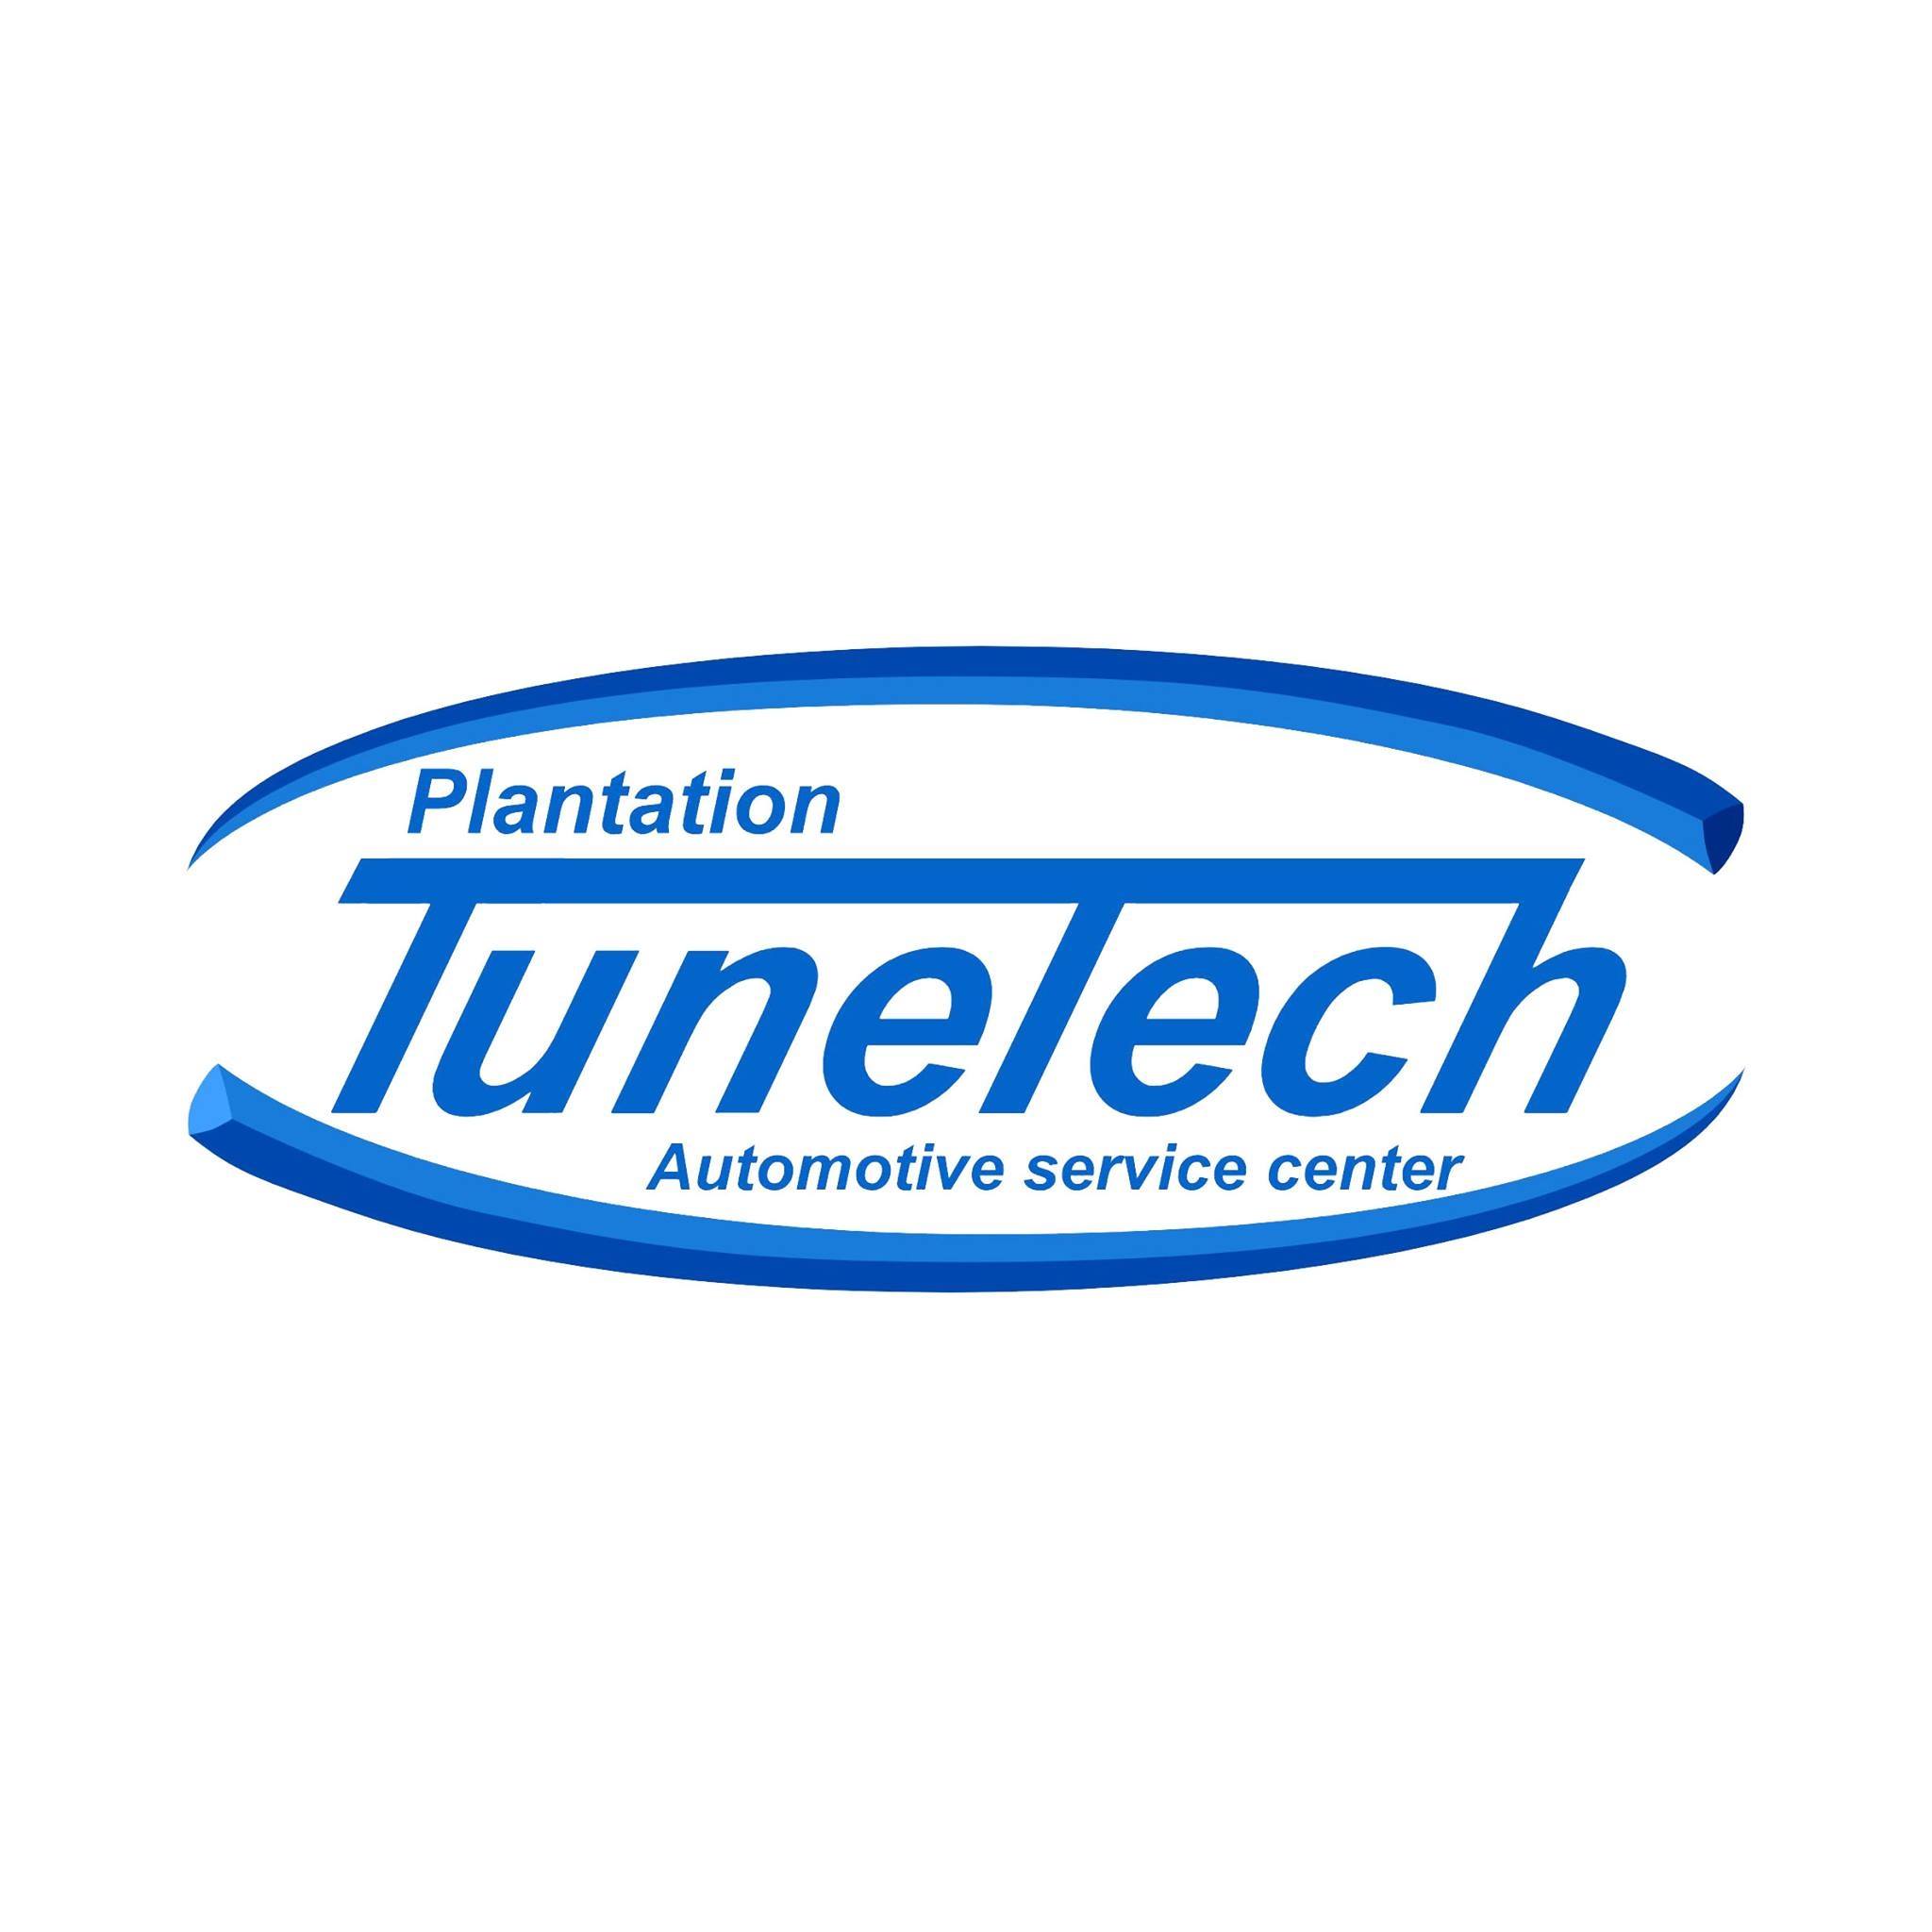 Plantation TuneTech Automotive Center